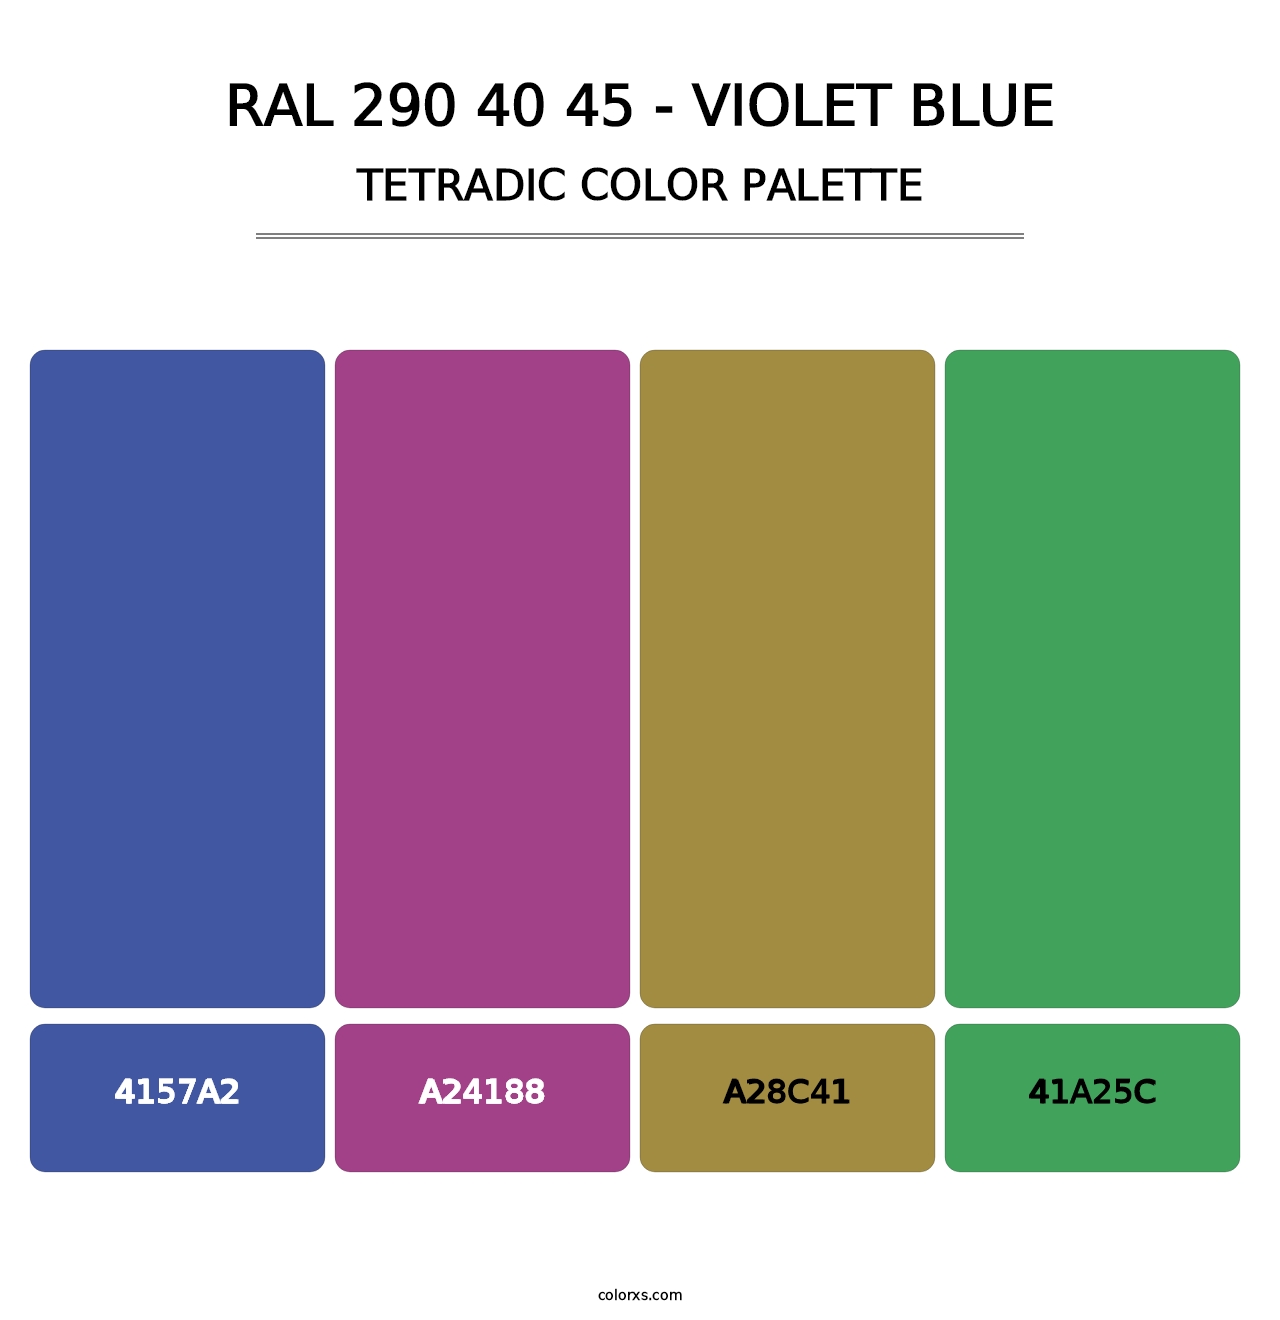 RAL 290 40 45 - Violet Blue - Tetradic Color Palette